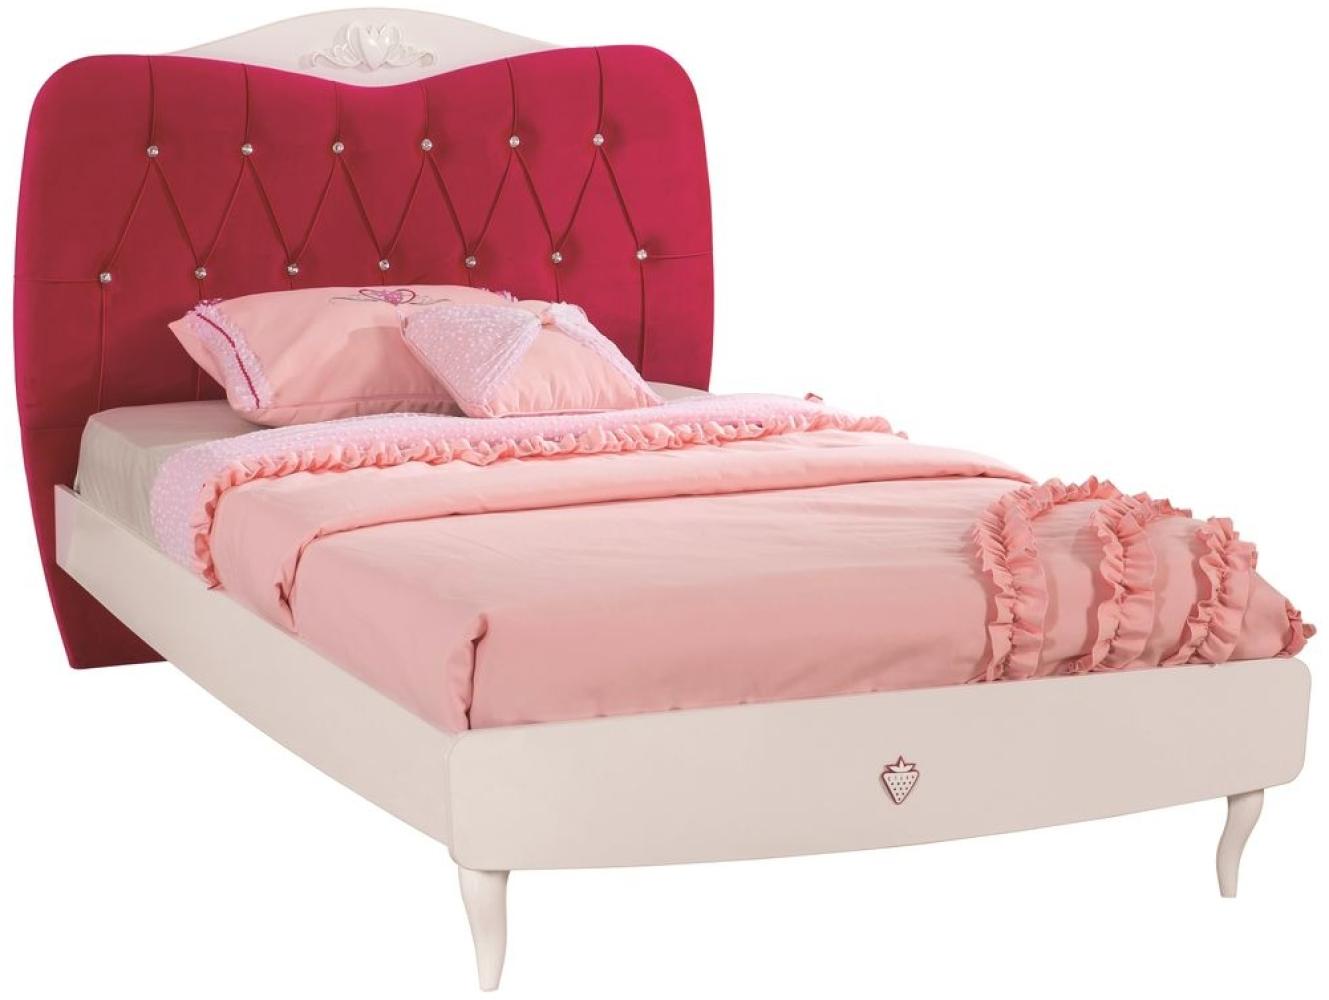 Cilek YAKUT Bett Jugendbett Jugendzimmer 120x200cm Weiß/Pink mit Bild 1